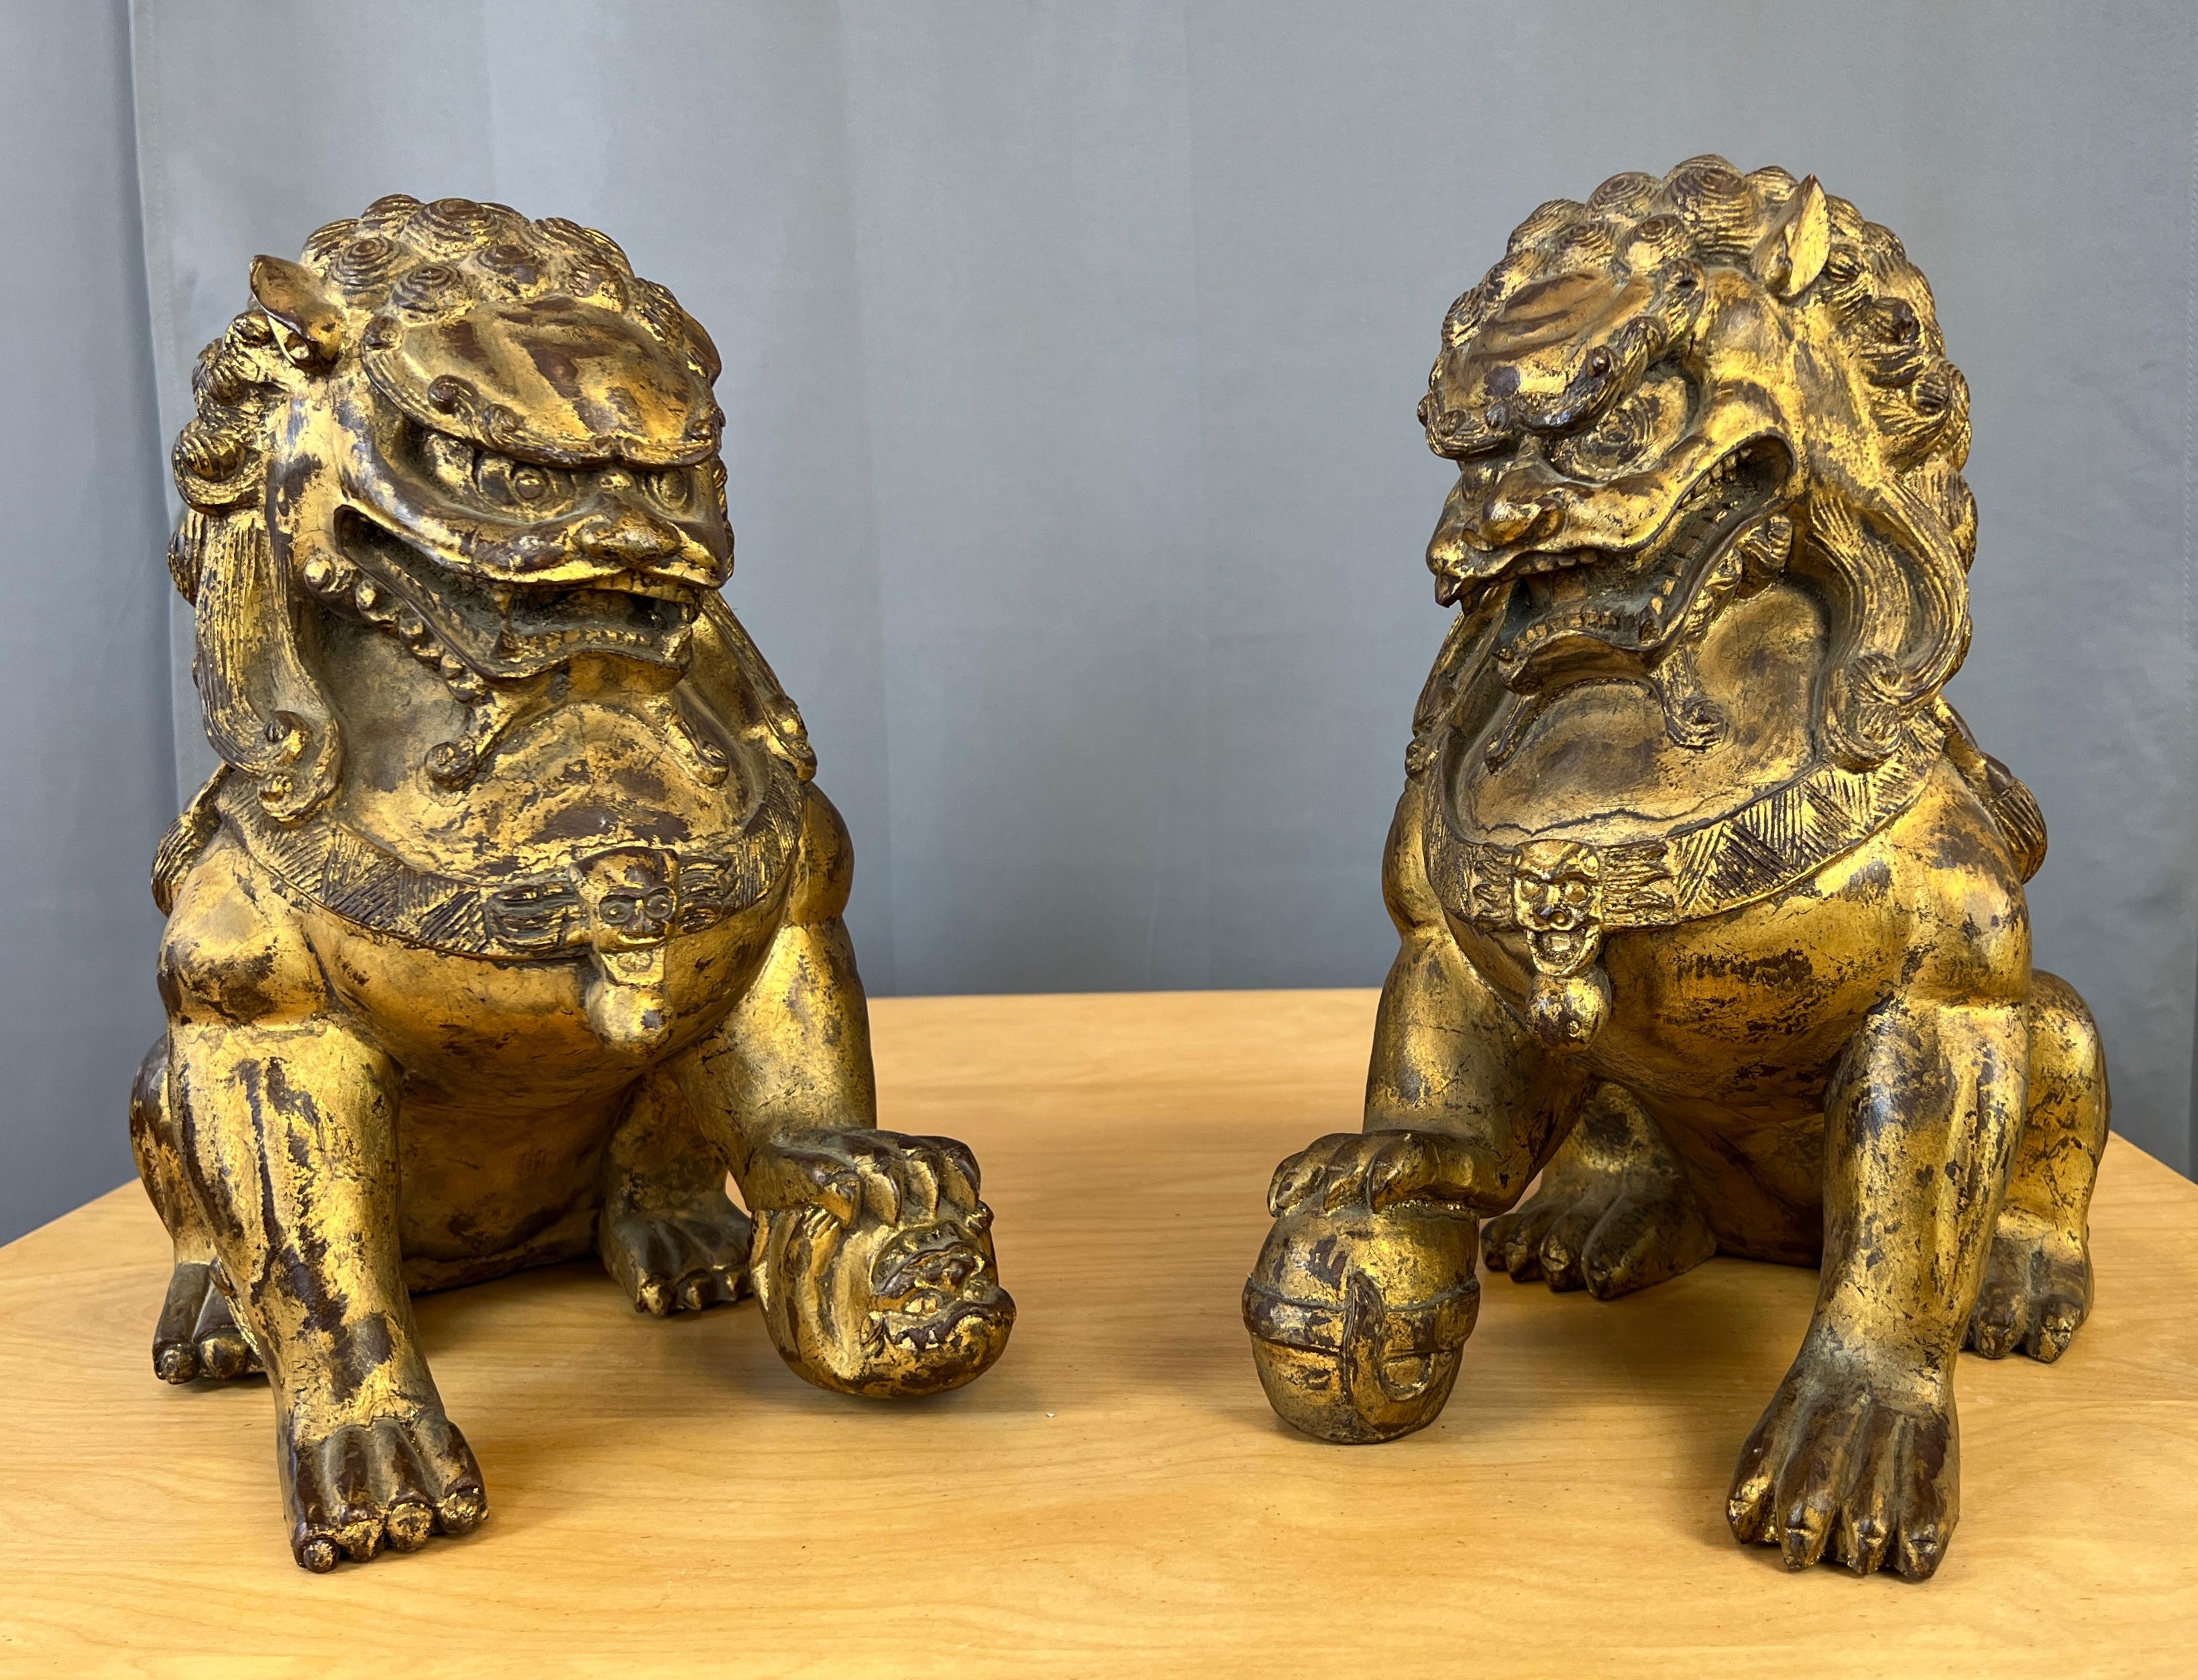 Angeboten wird ein Paar vergoldete und geschnitzte chinesische Foo Dog/Guardian Lions Figuren
Wunderbare Handwerkskunst mit der Hand schnitzen, dass in diesem Paar gegangen ist, von den Pfoten Schritt auf einem umgedrehten kleinen Monster auf